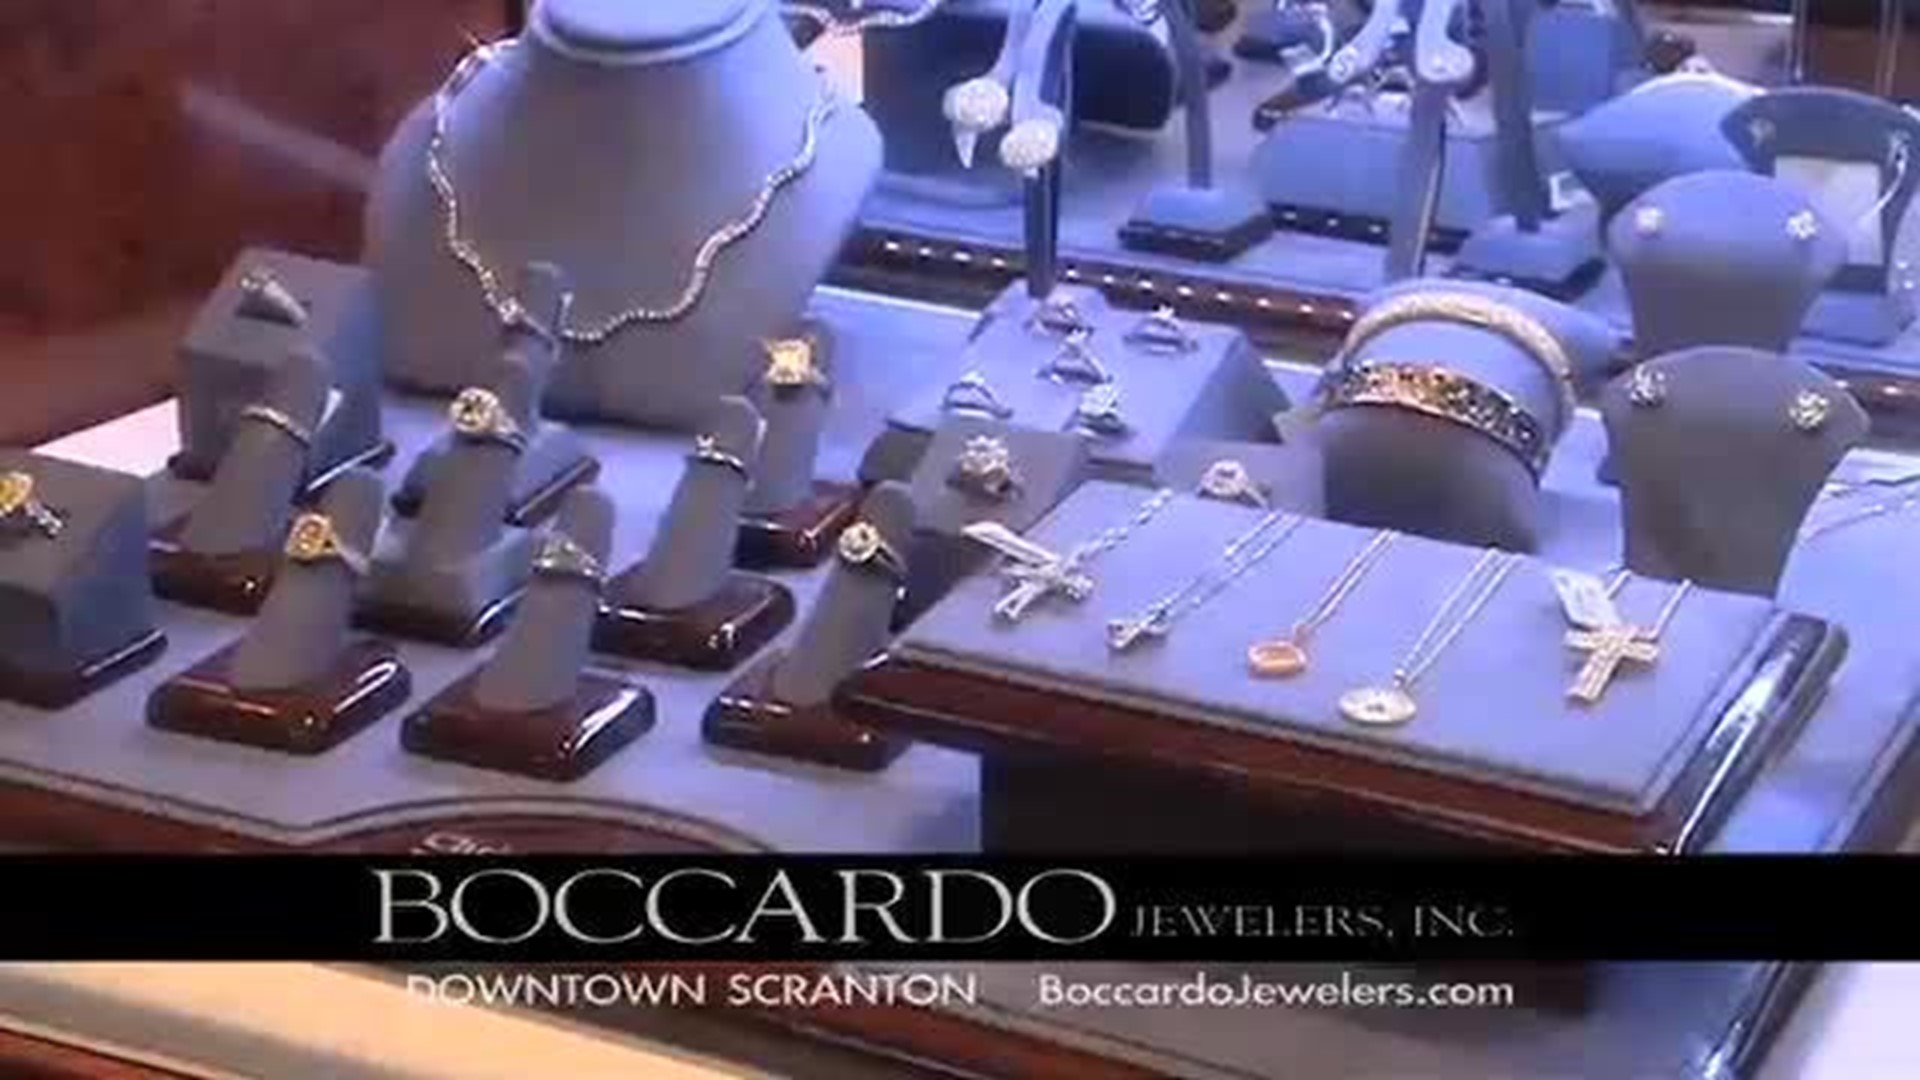 Boccardo Jewelers